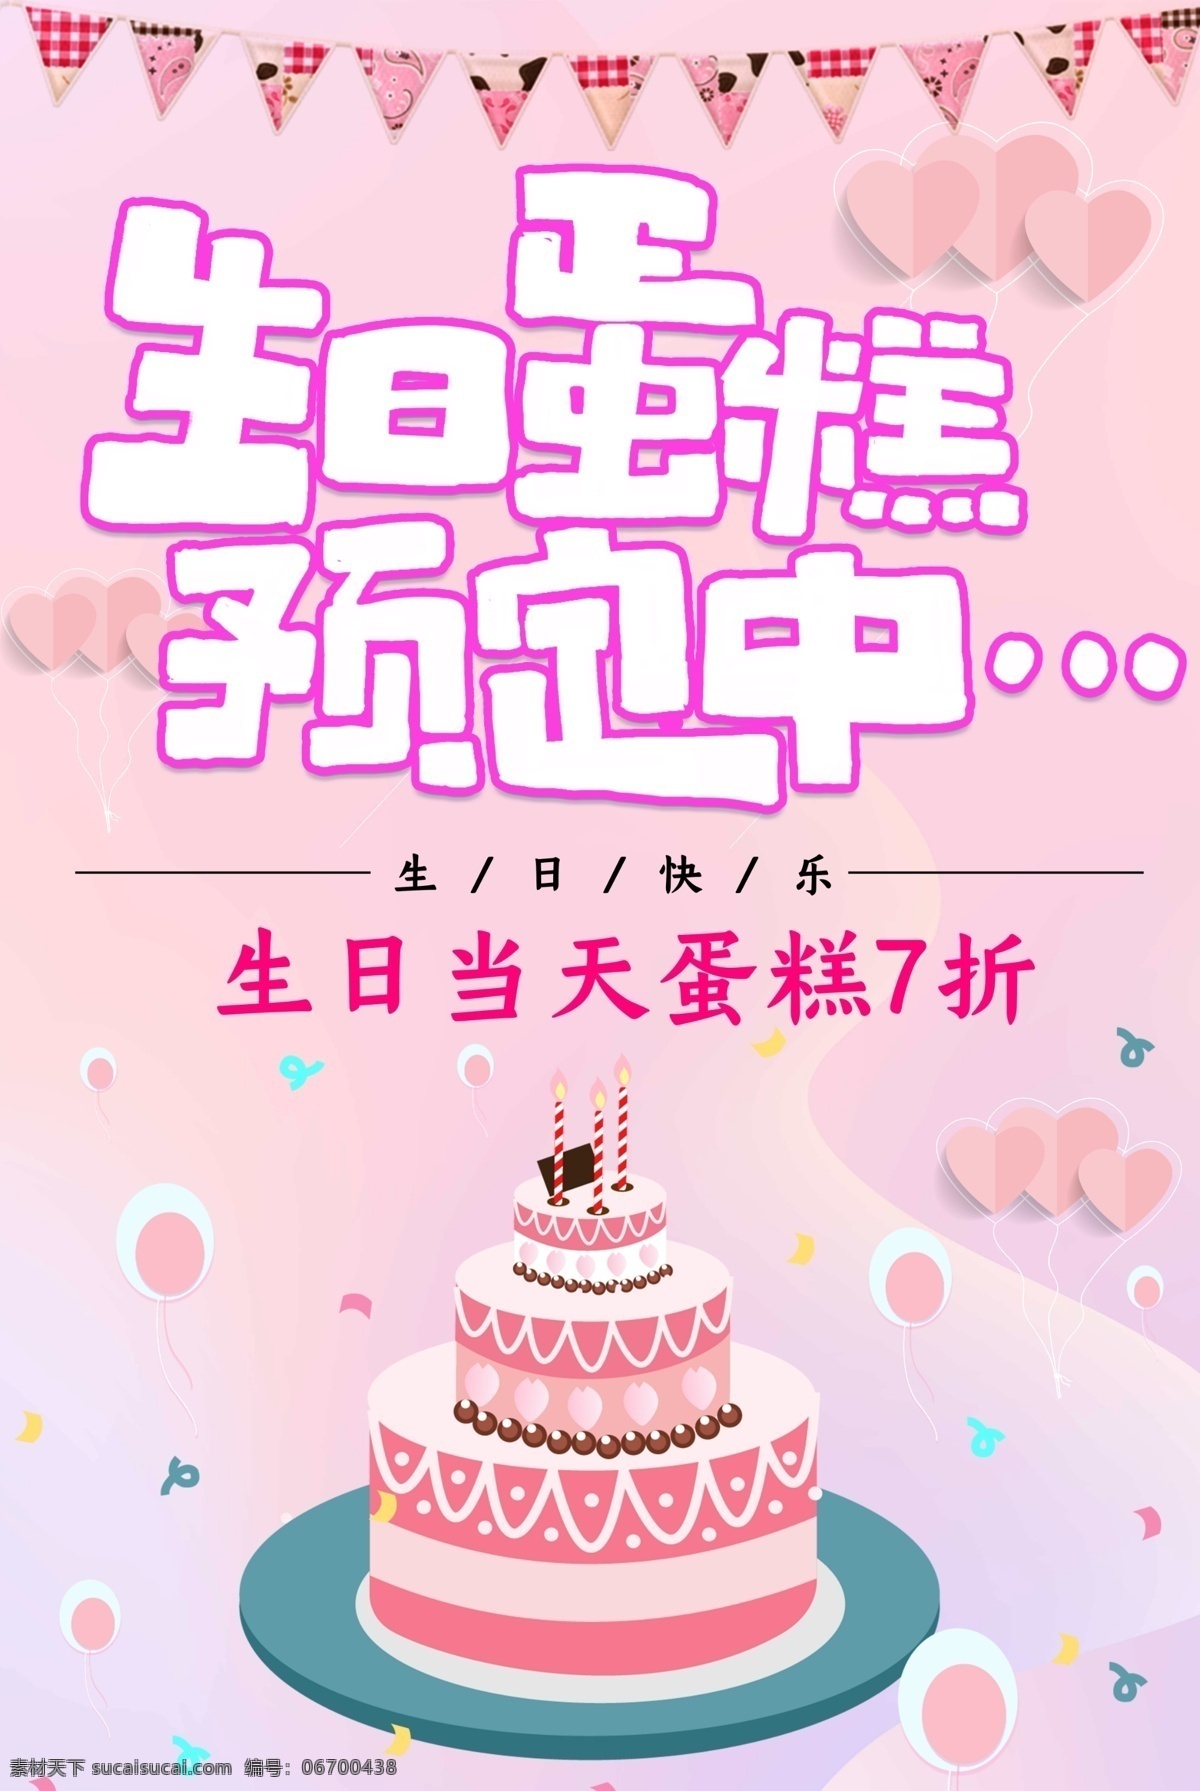 蛋糕 蛋糕海报 蛋糕展板 生日蛋糕图片 粉色蛋糕 蛋糕宣传单 三层生日蛋糕